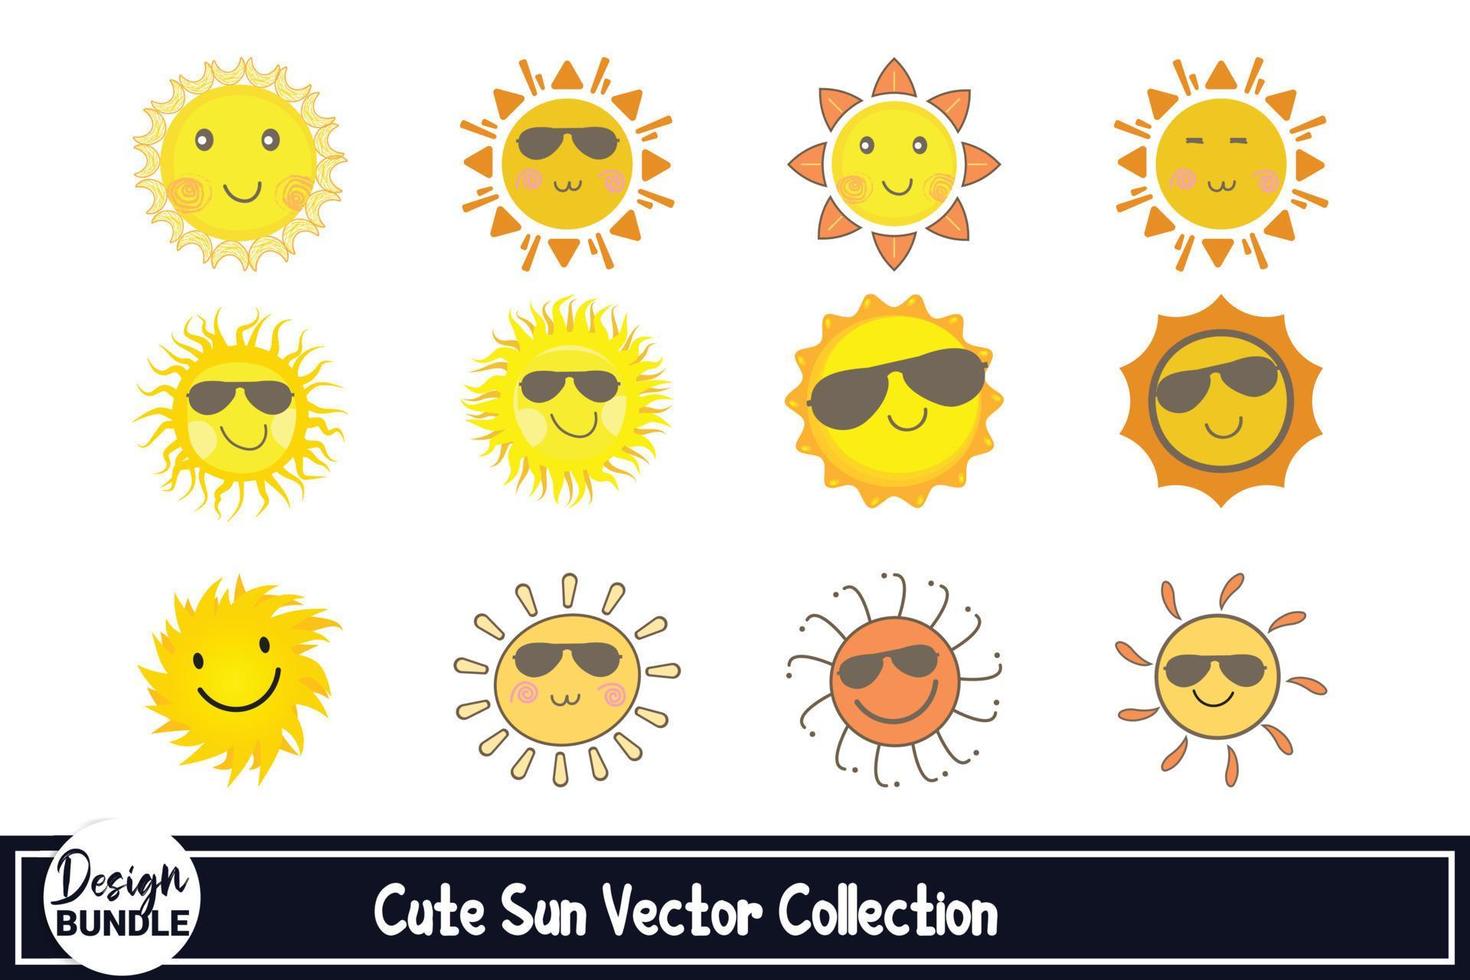 conception de vecteur de soleil mignon pour autocollant de médias sociaux. conception de soleil avec une nuance de couleur jaune et orange et des lunettes de soleil cool. jolie collection de vecteurs de soleil avec des visages de soleil heureux.